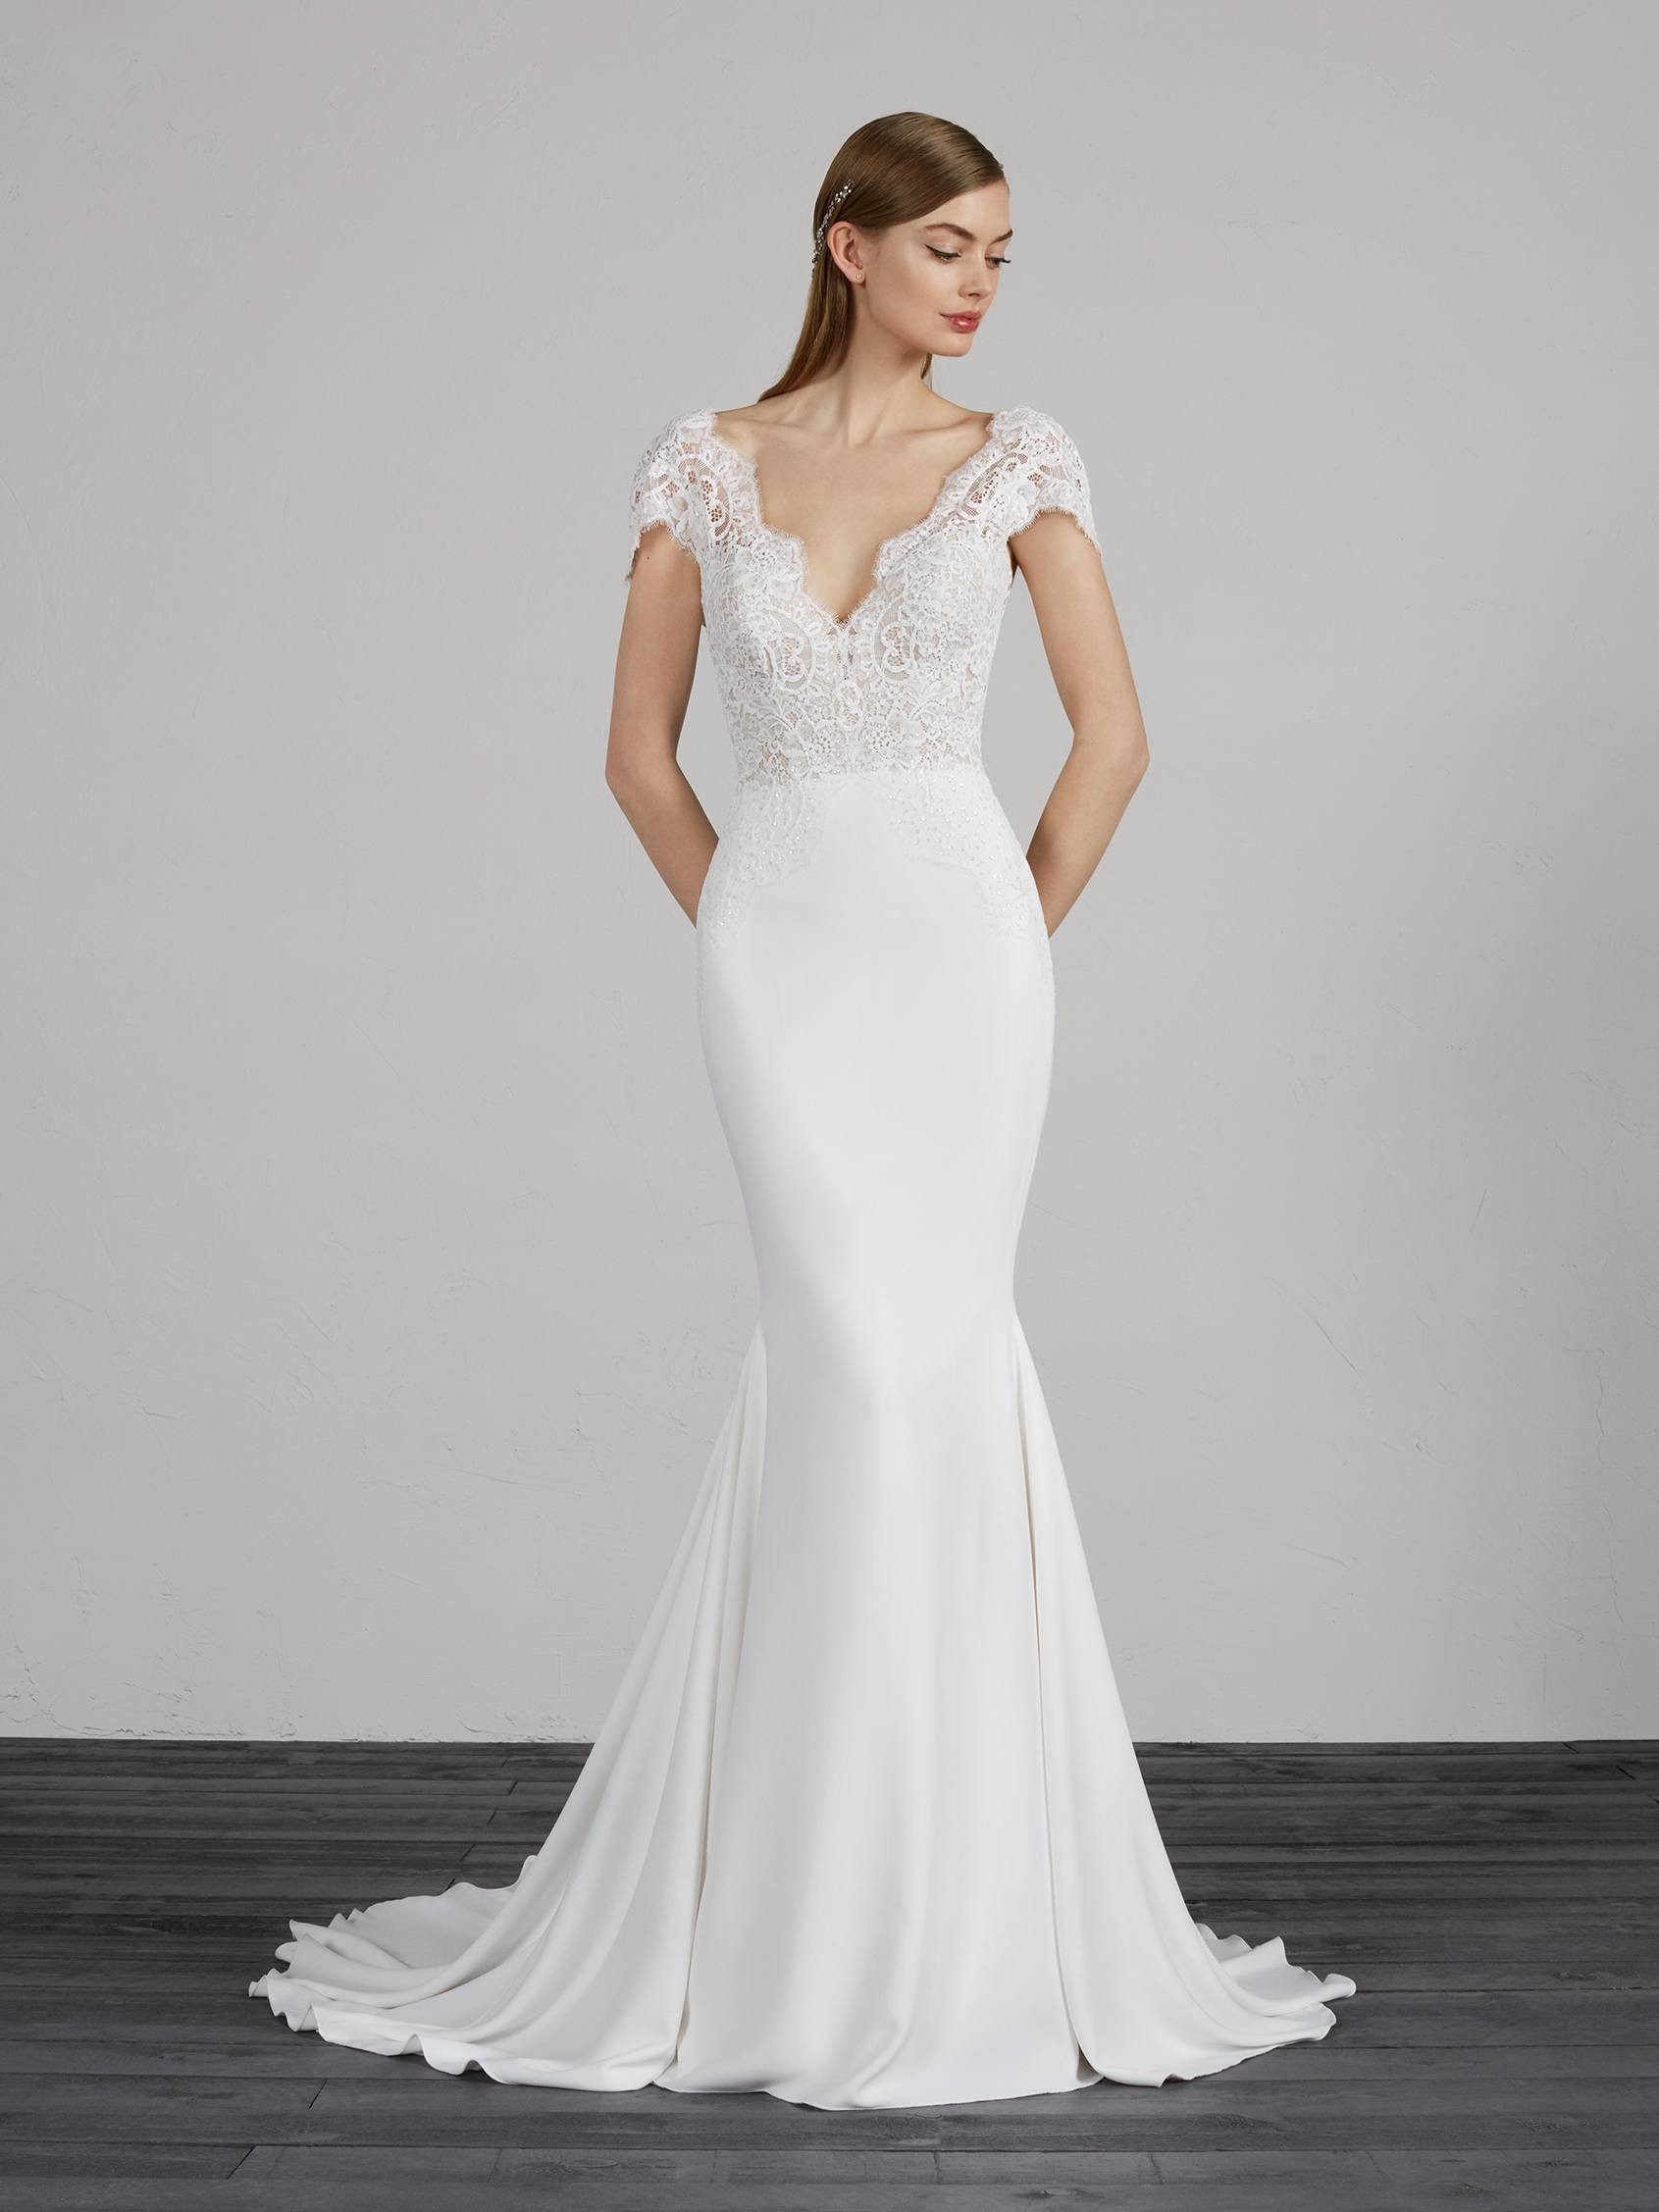 Milady Wedding Dress - Pronovias - Wedding Atelier New York